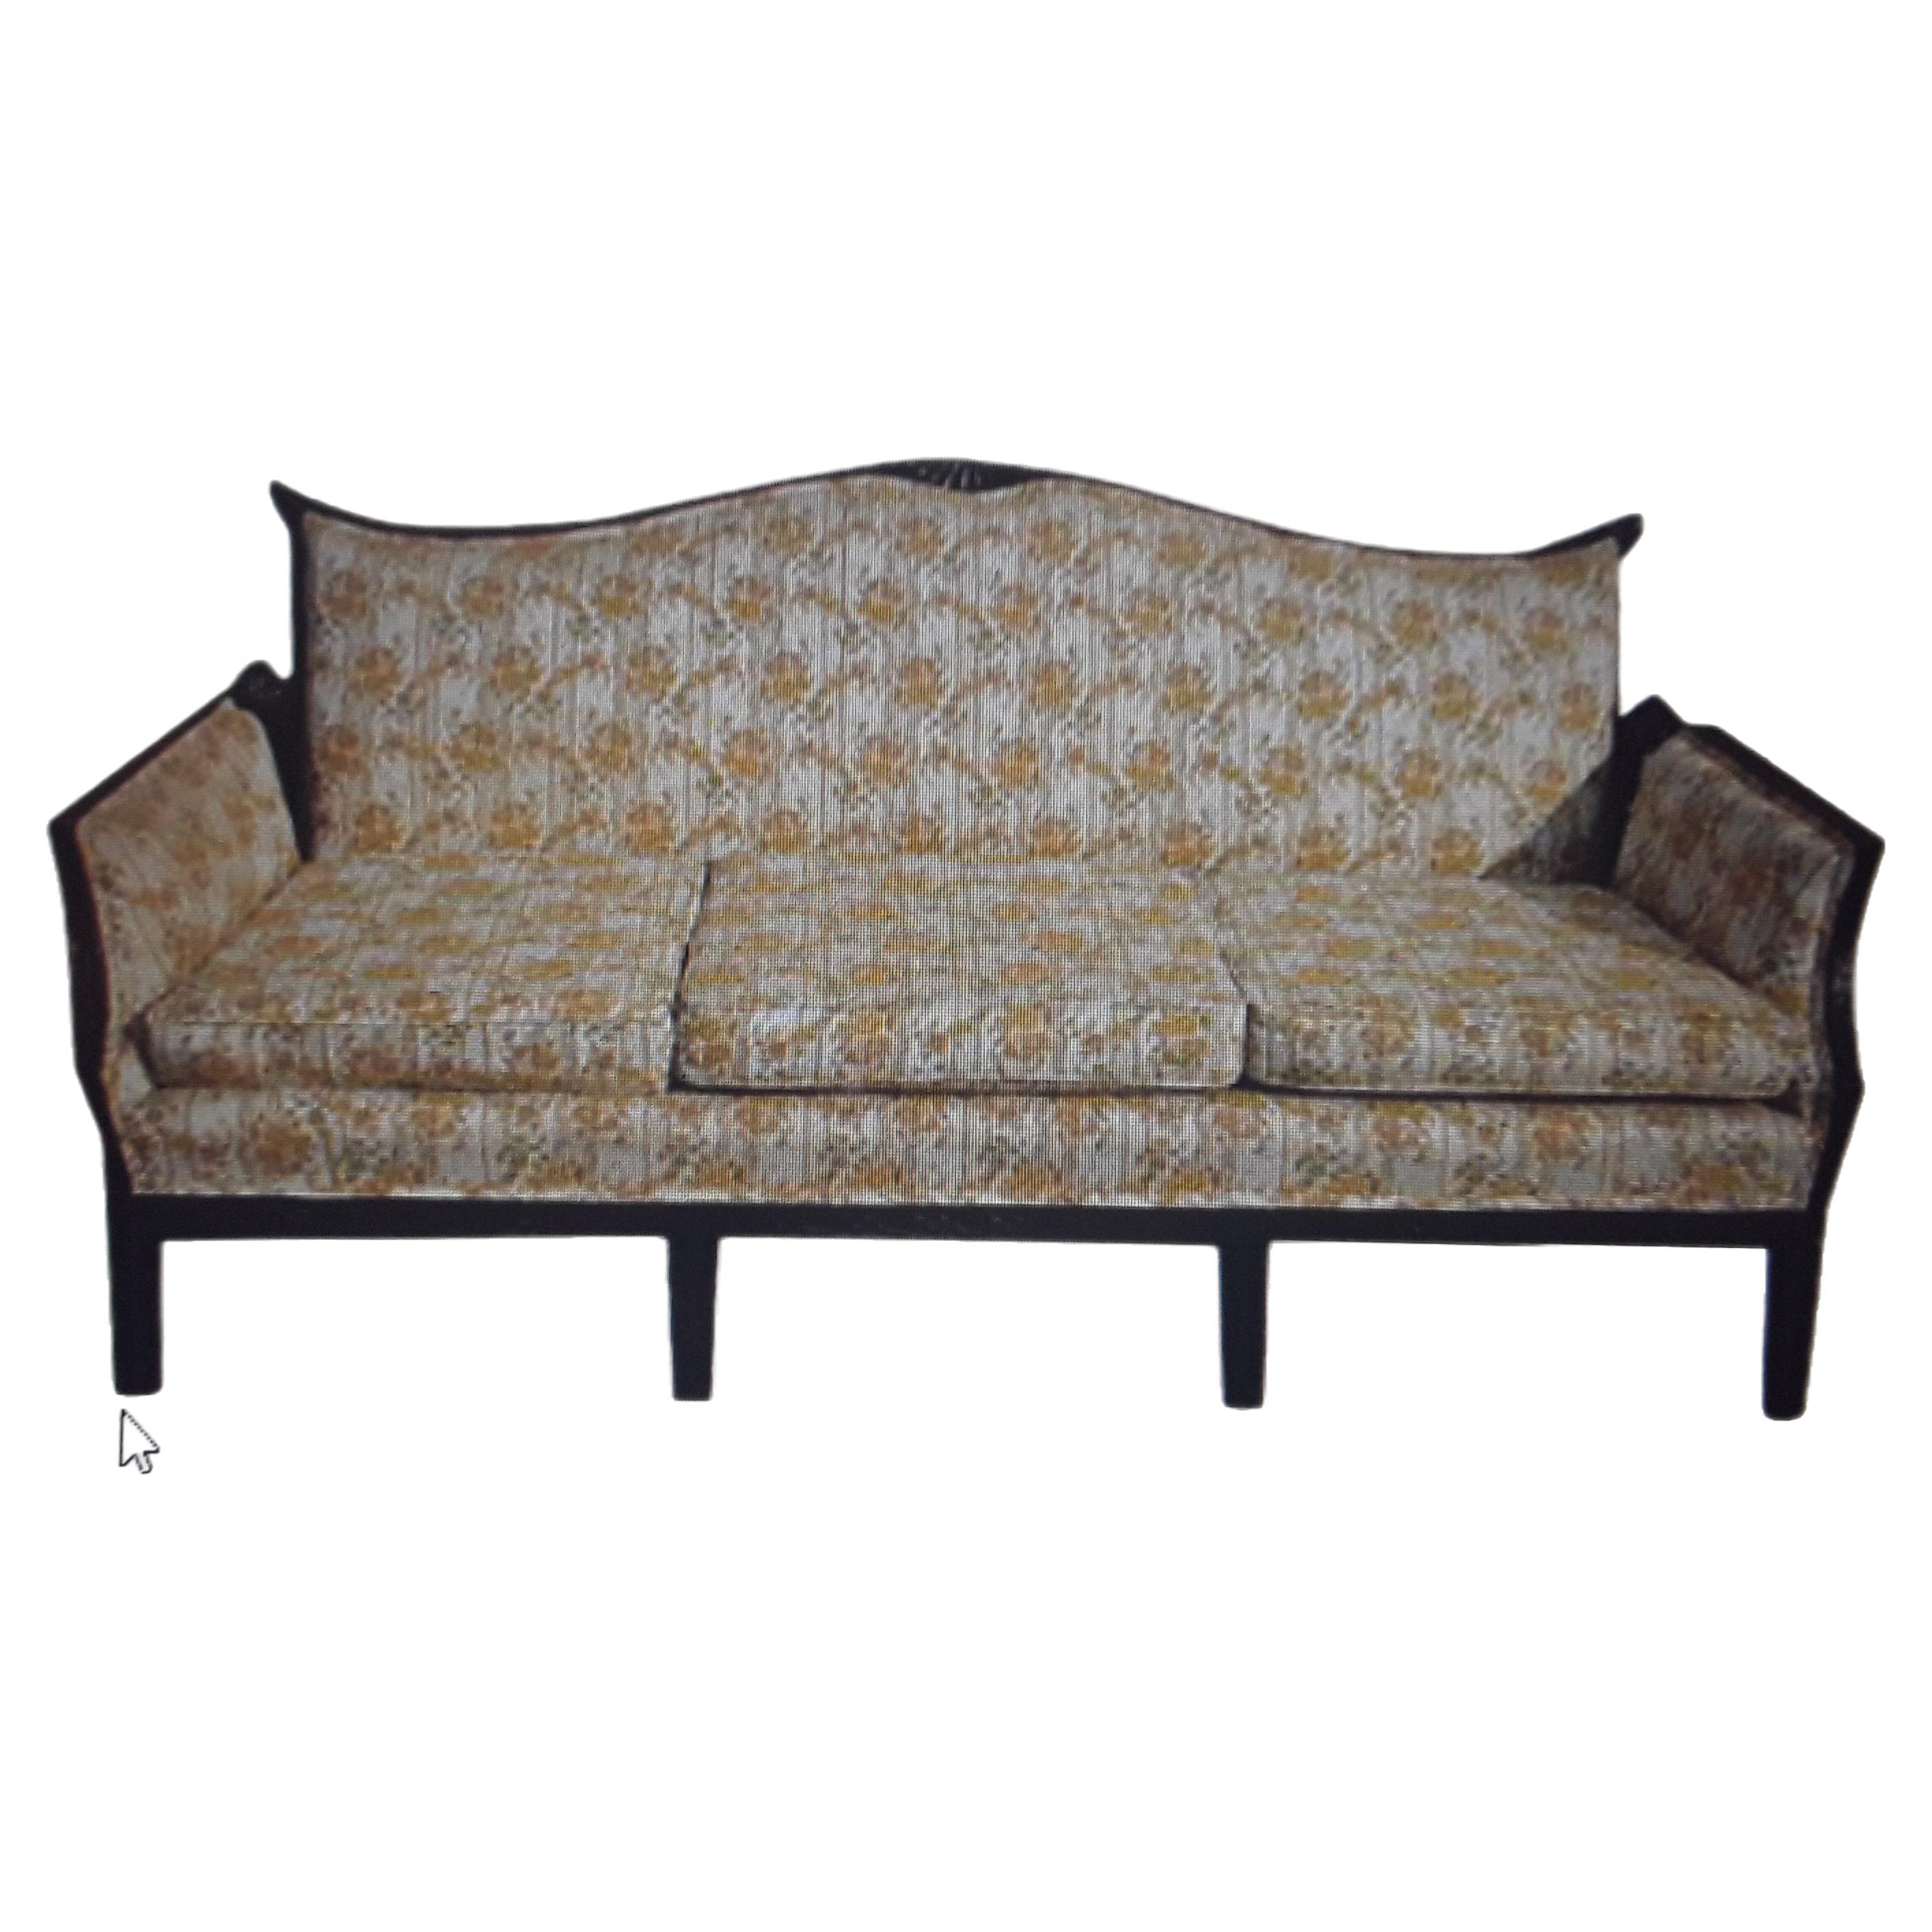 1940's Hollywood Regency Chinoiserie Fachmännisch geschnitzt Grand Sofa. Bitte schauen Sie sich die Bilder genau an, der gesamte Holzrahmen ist mit einem wunderschönen asiatischen Motiv geschnitzt. Sehr hochwertiger Vintage-Stoff in gutem Zustand.